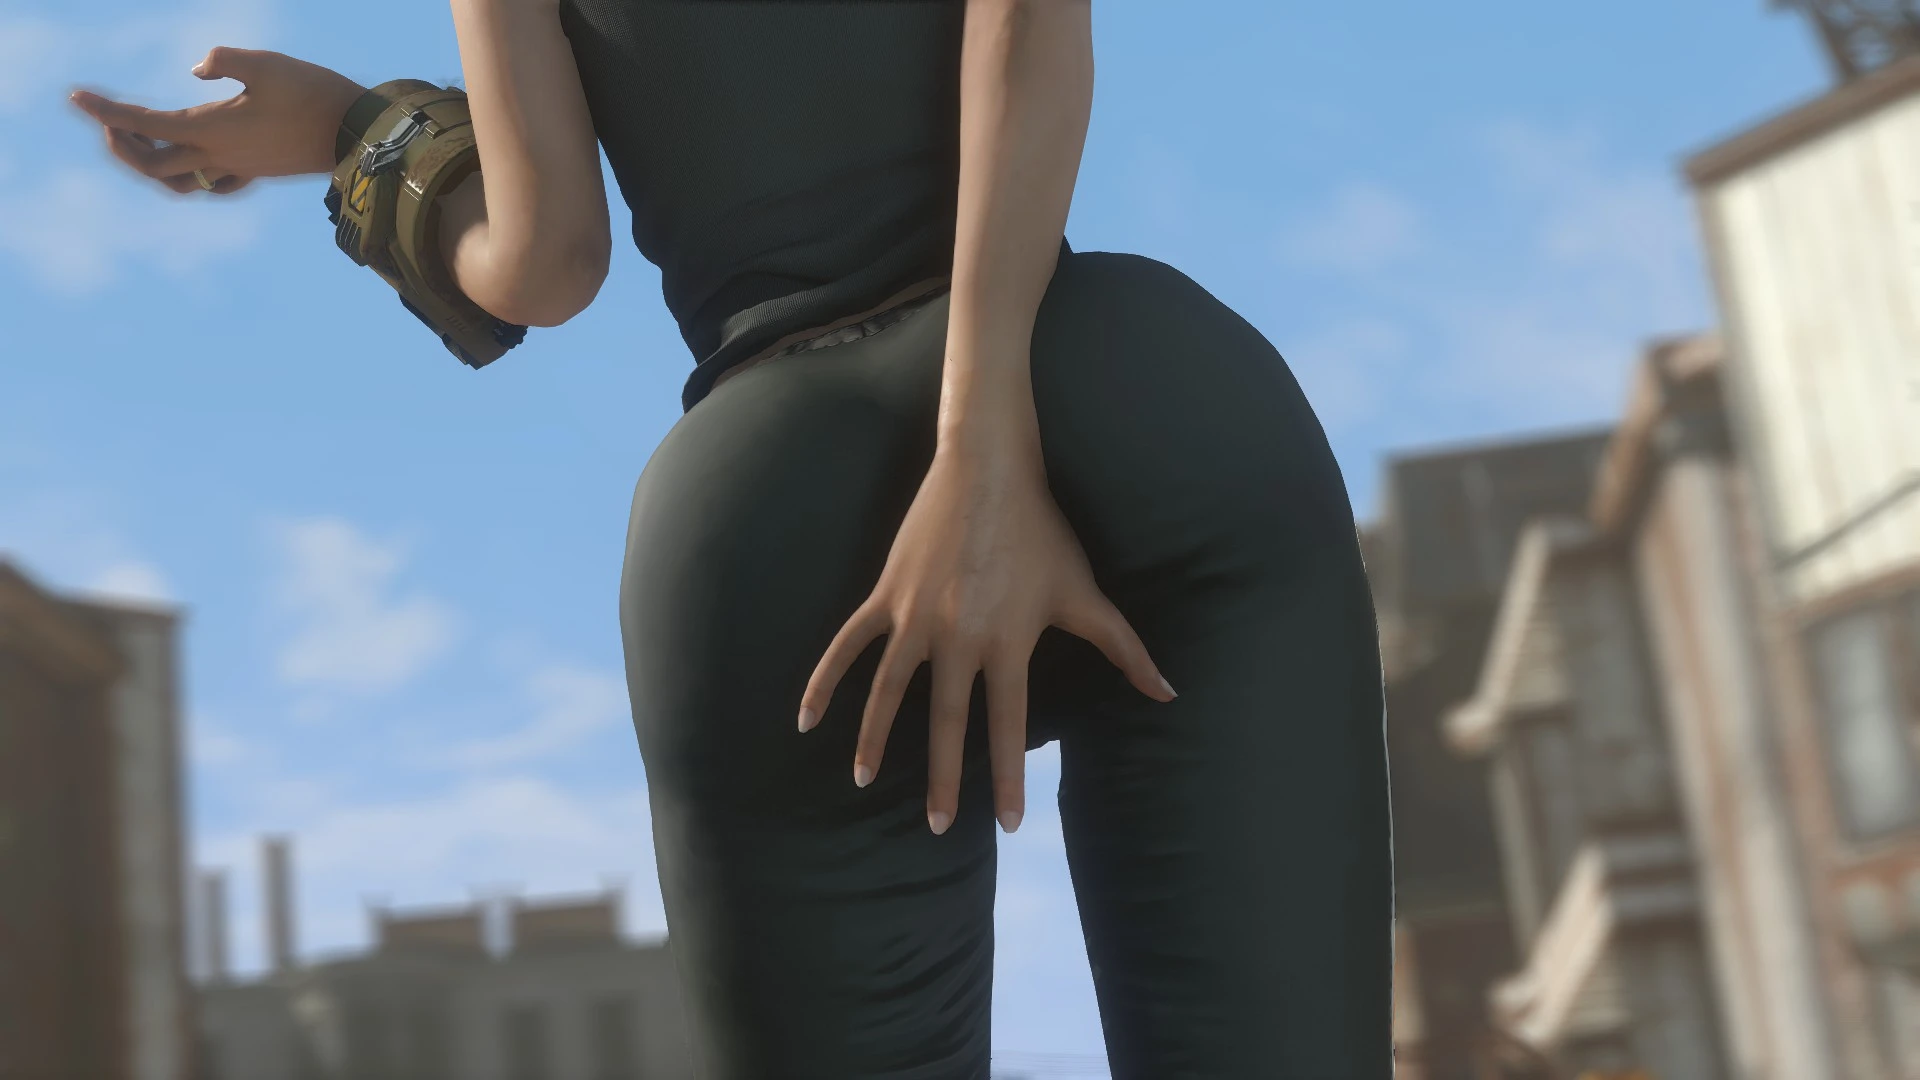 Nice Ass Ass